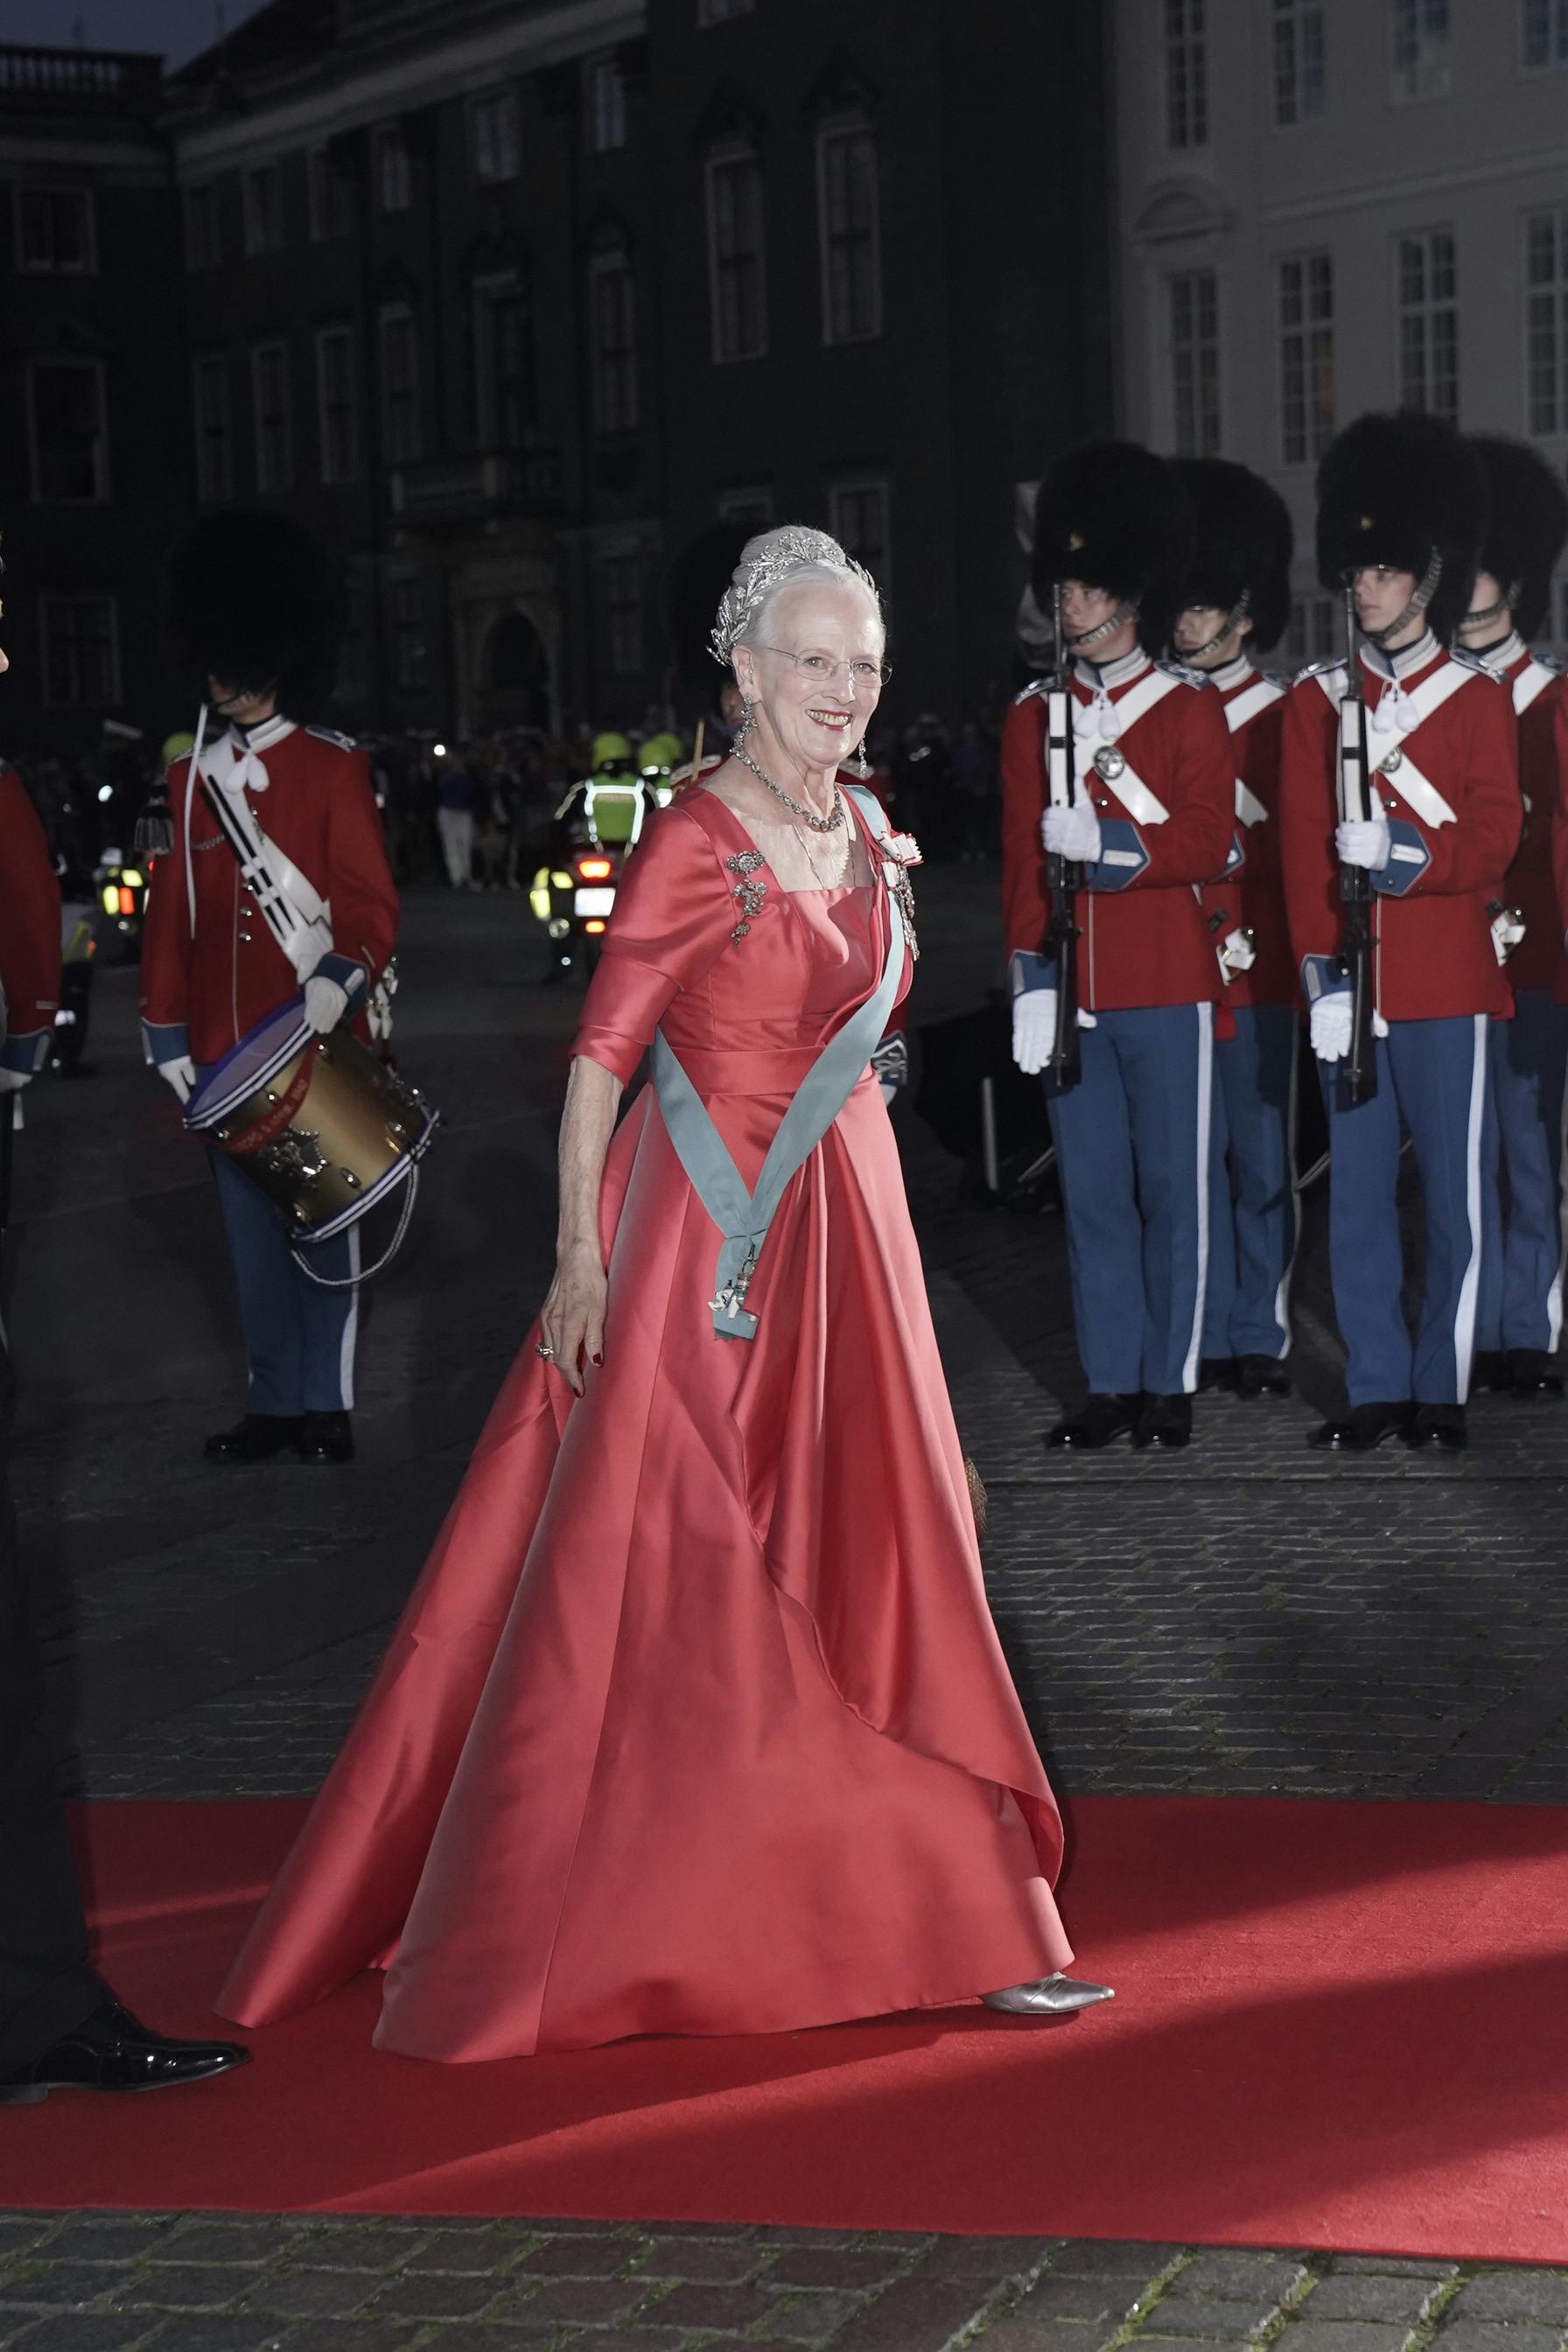 Dronning Margrethe ankommer.&nbsp;
